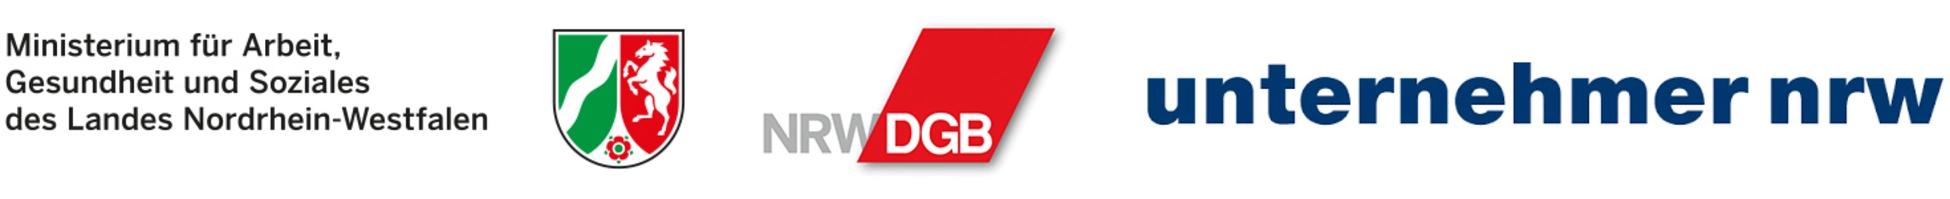 Logos: Arbeitsministerium NRW, Landesvereinigung der Unternehmensverbände NRW, DGB NRW